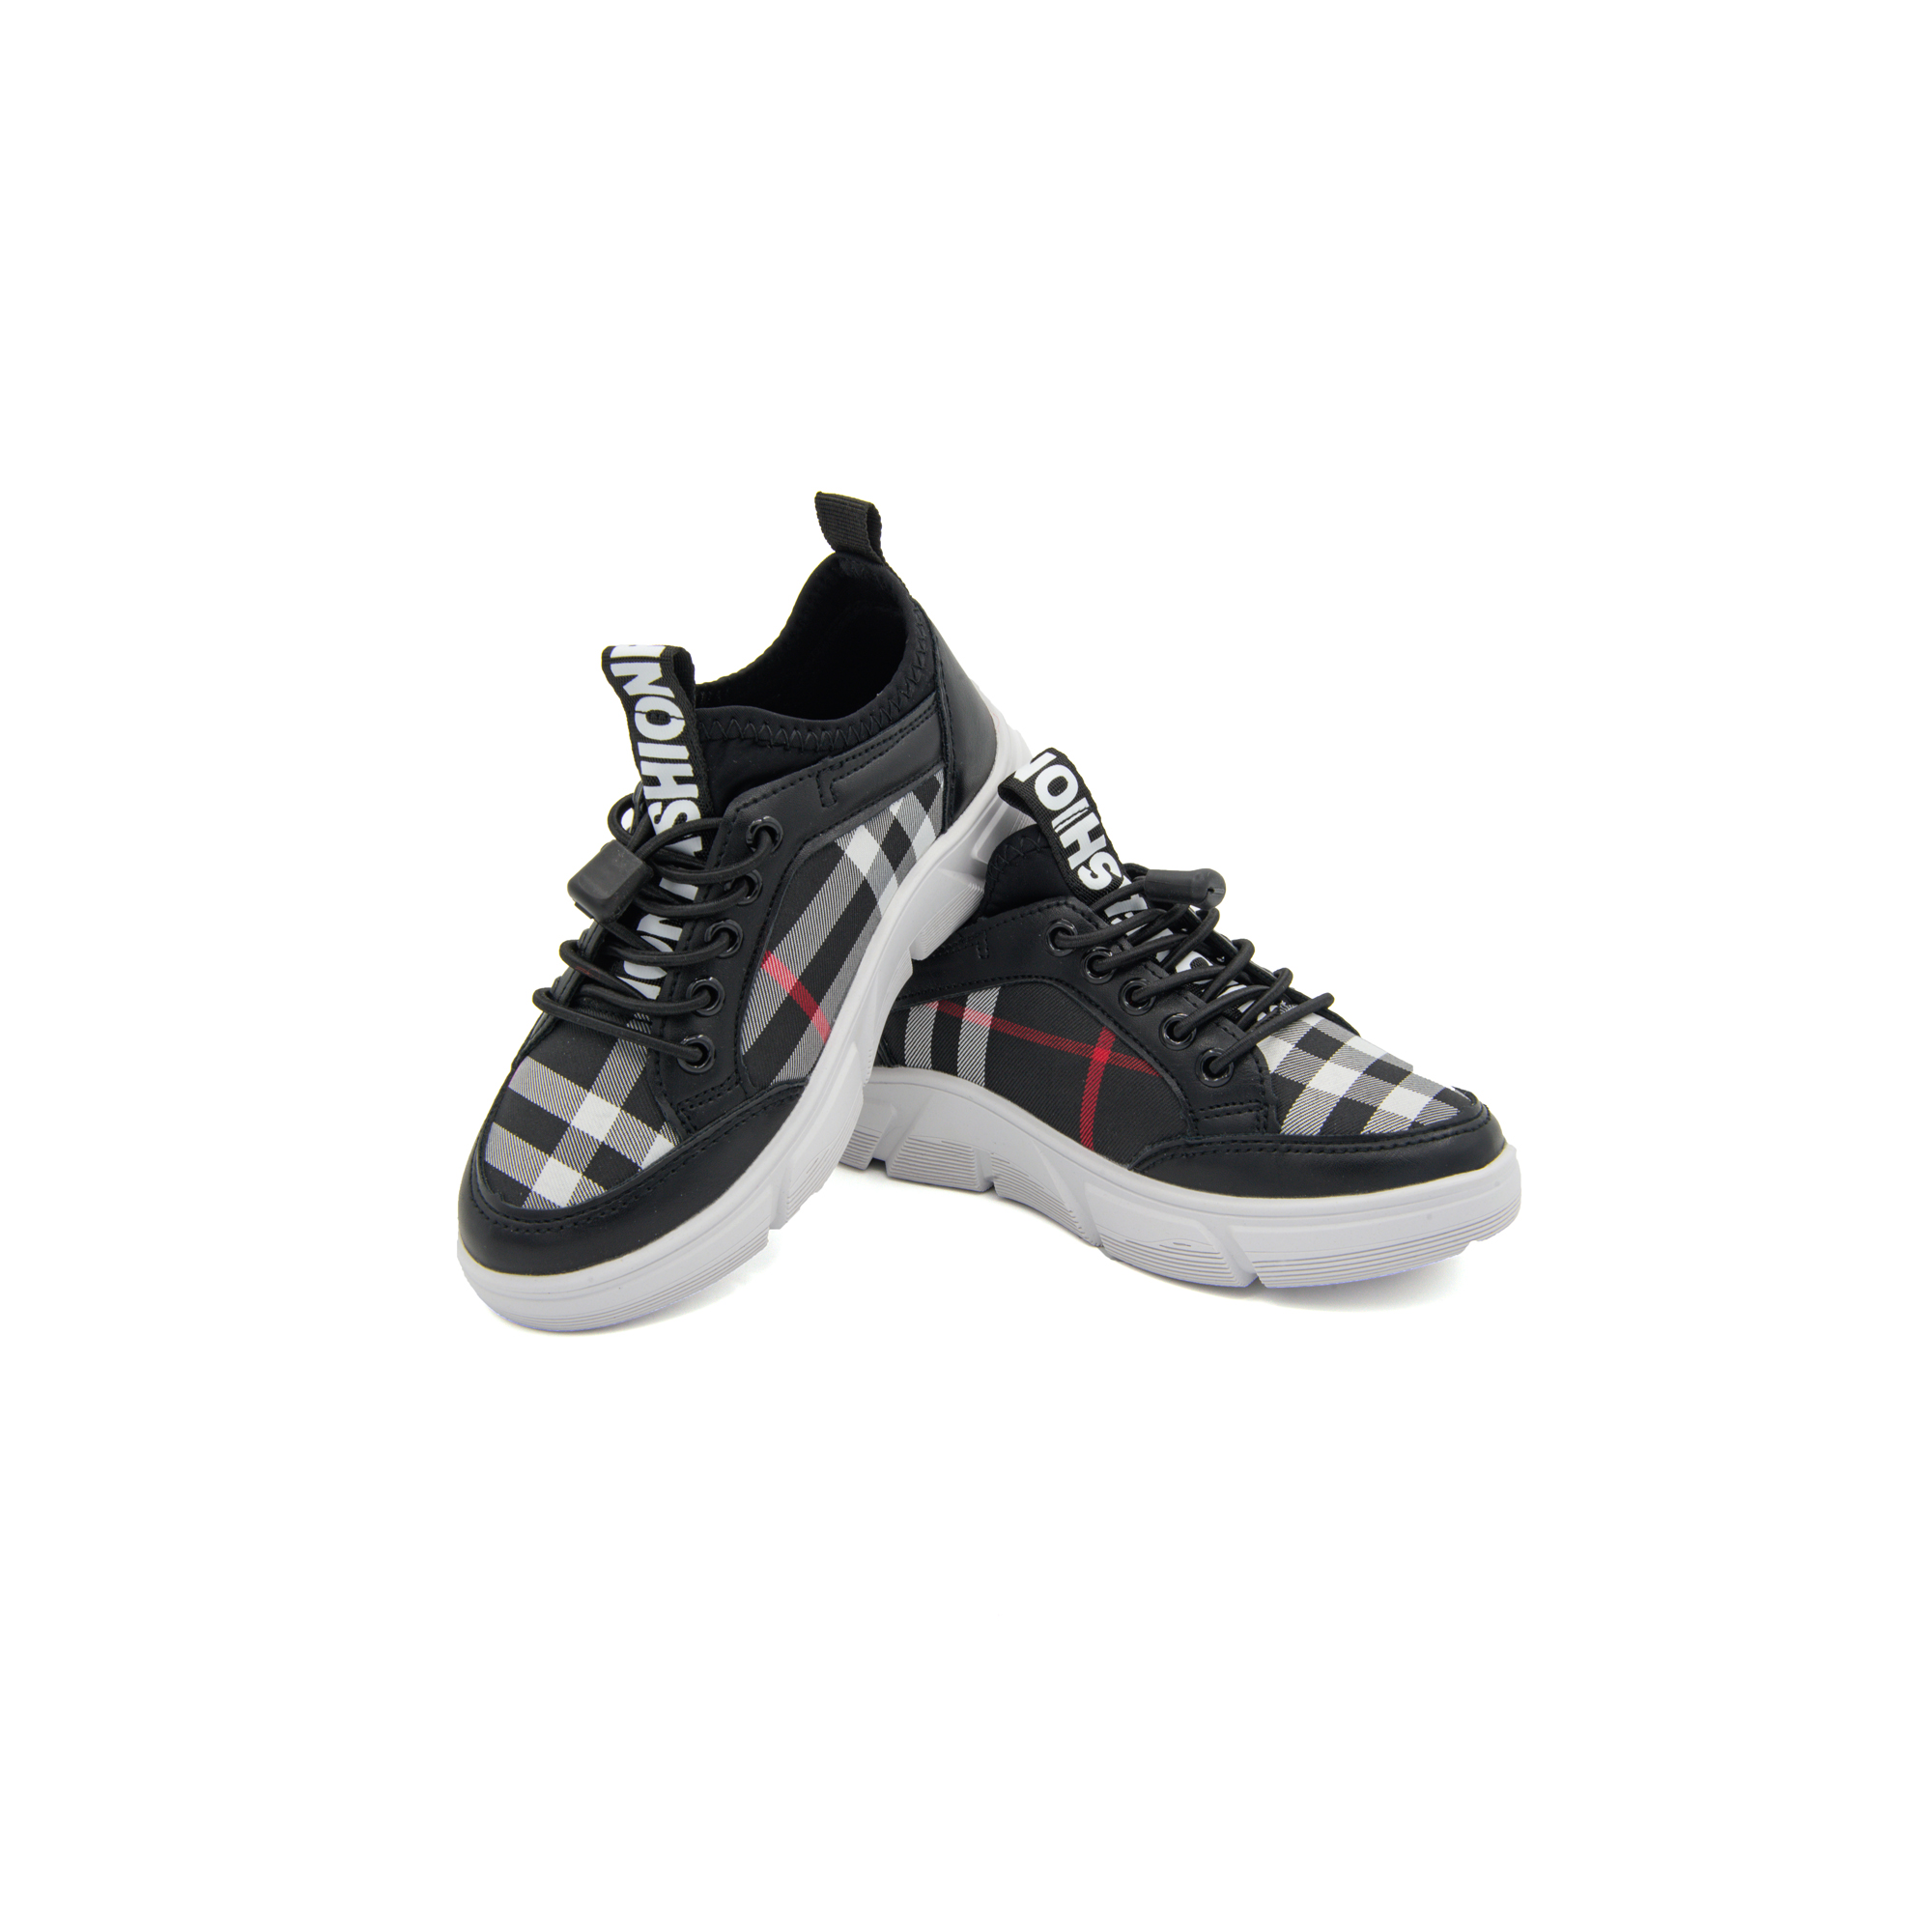 Giày Sneaker Bé Trai Đi Học Cổ Thấp Crown Space UK Active Trẻ em Cao Cấp CRUK8025 Siêu Nhẹ Êm Size 28-37